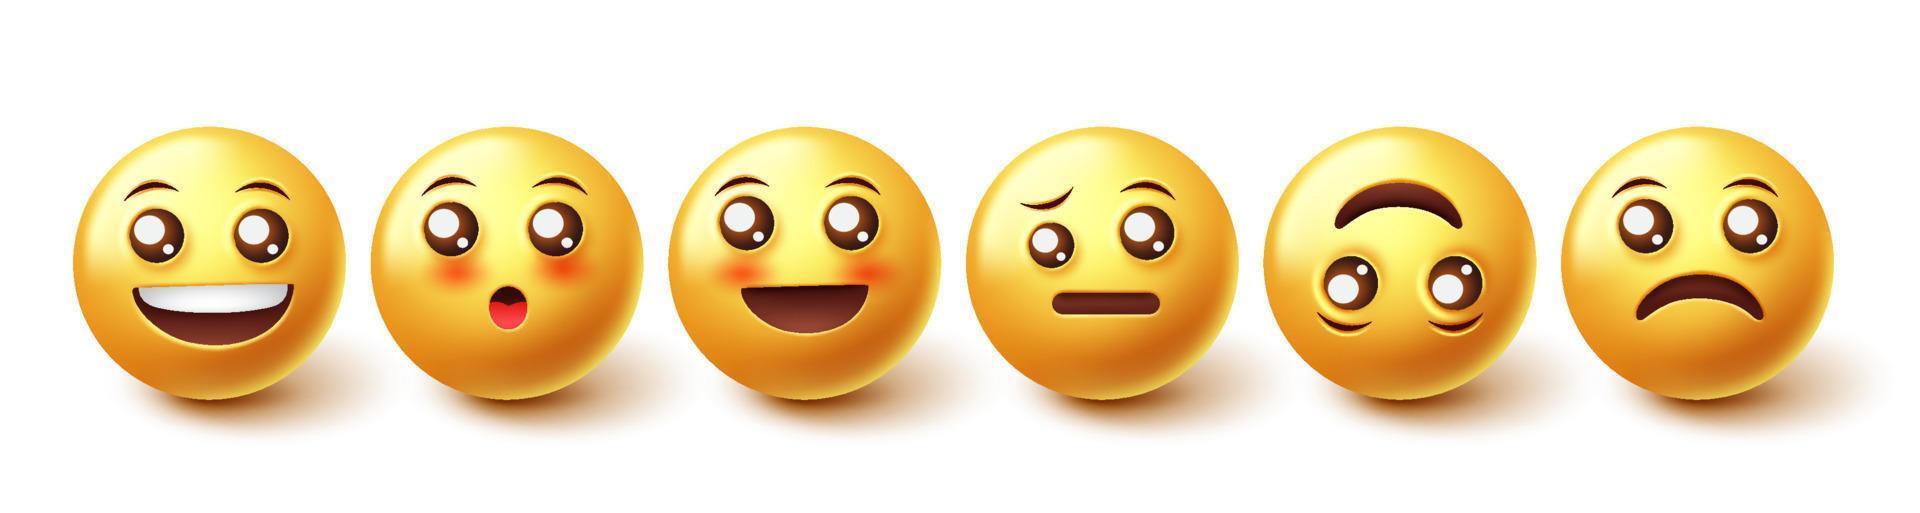 set vettoriale di caratteri emoji. emoticon personaggio 3d con viso emoji carino arrossendo, confuso e felice nel design grafico per la raccolta di emoticon di espressione facciale. illustrazione vettoriale.